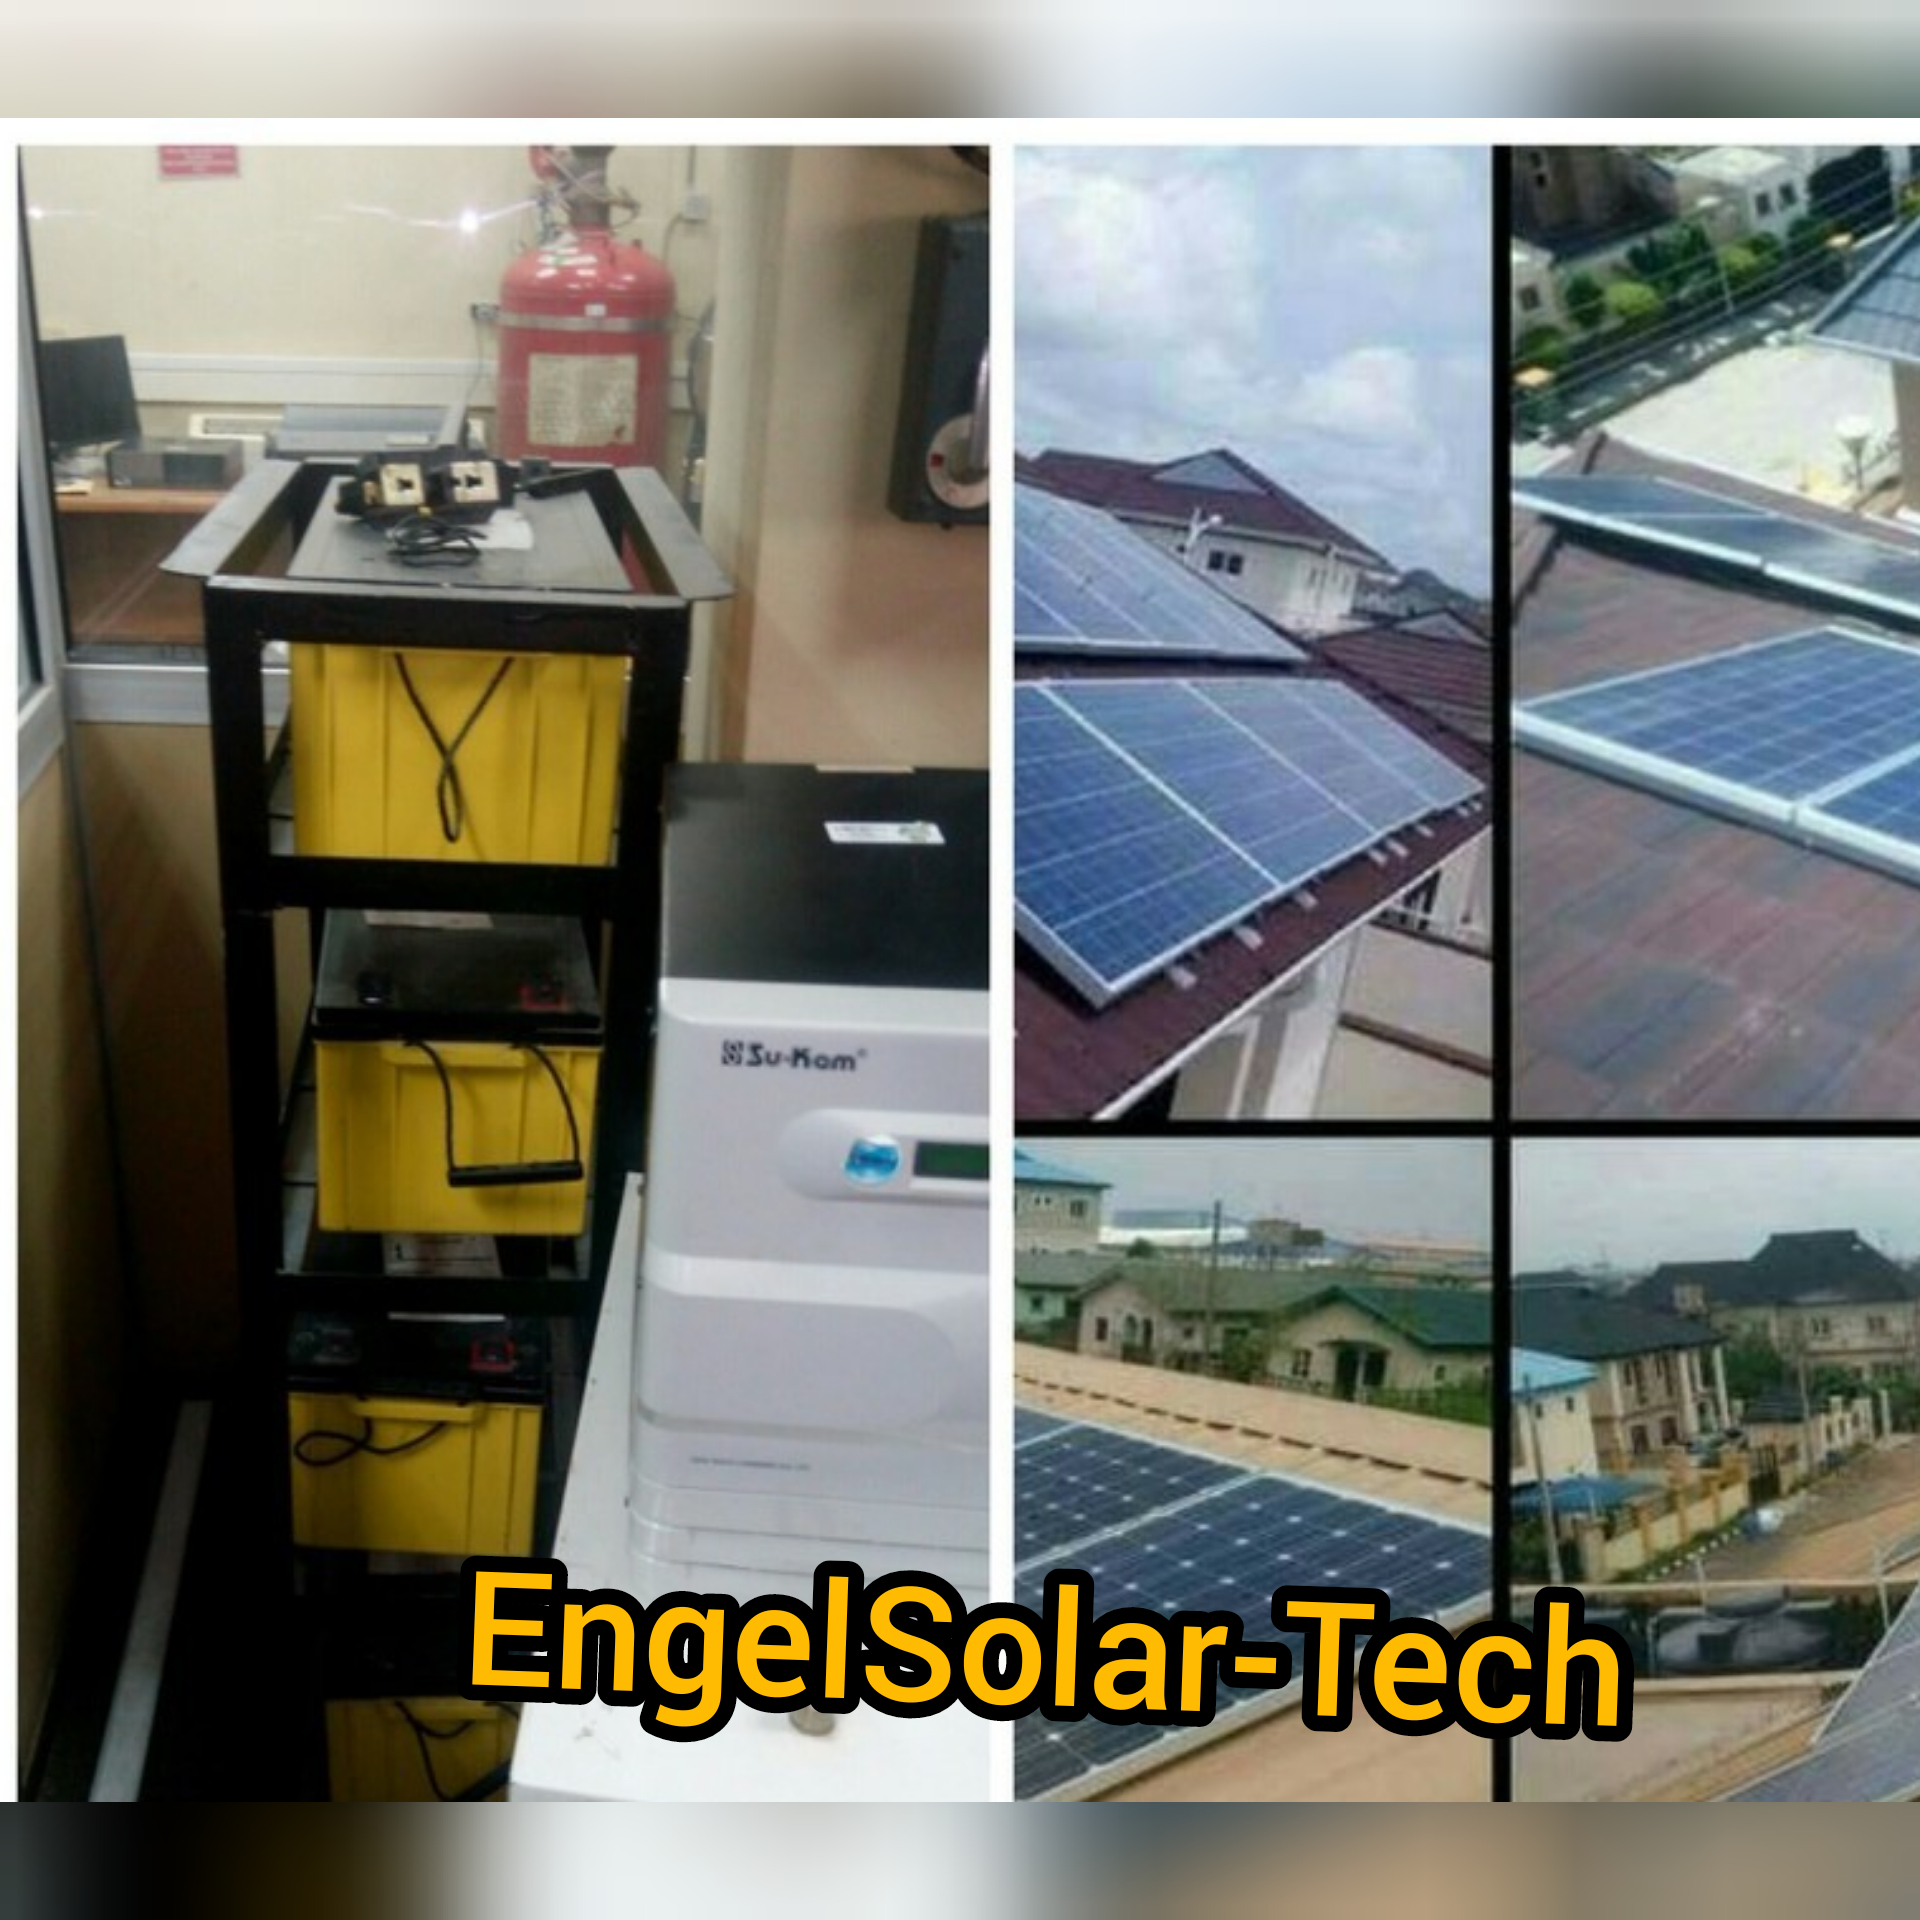 ENGEL SOLAR TECH provider